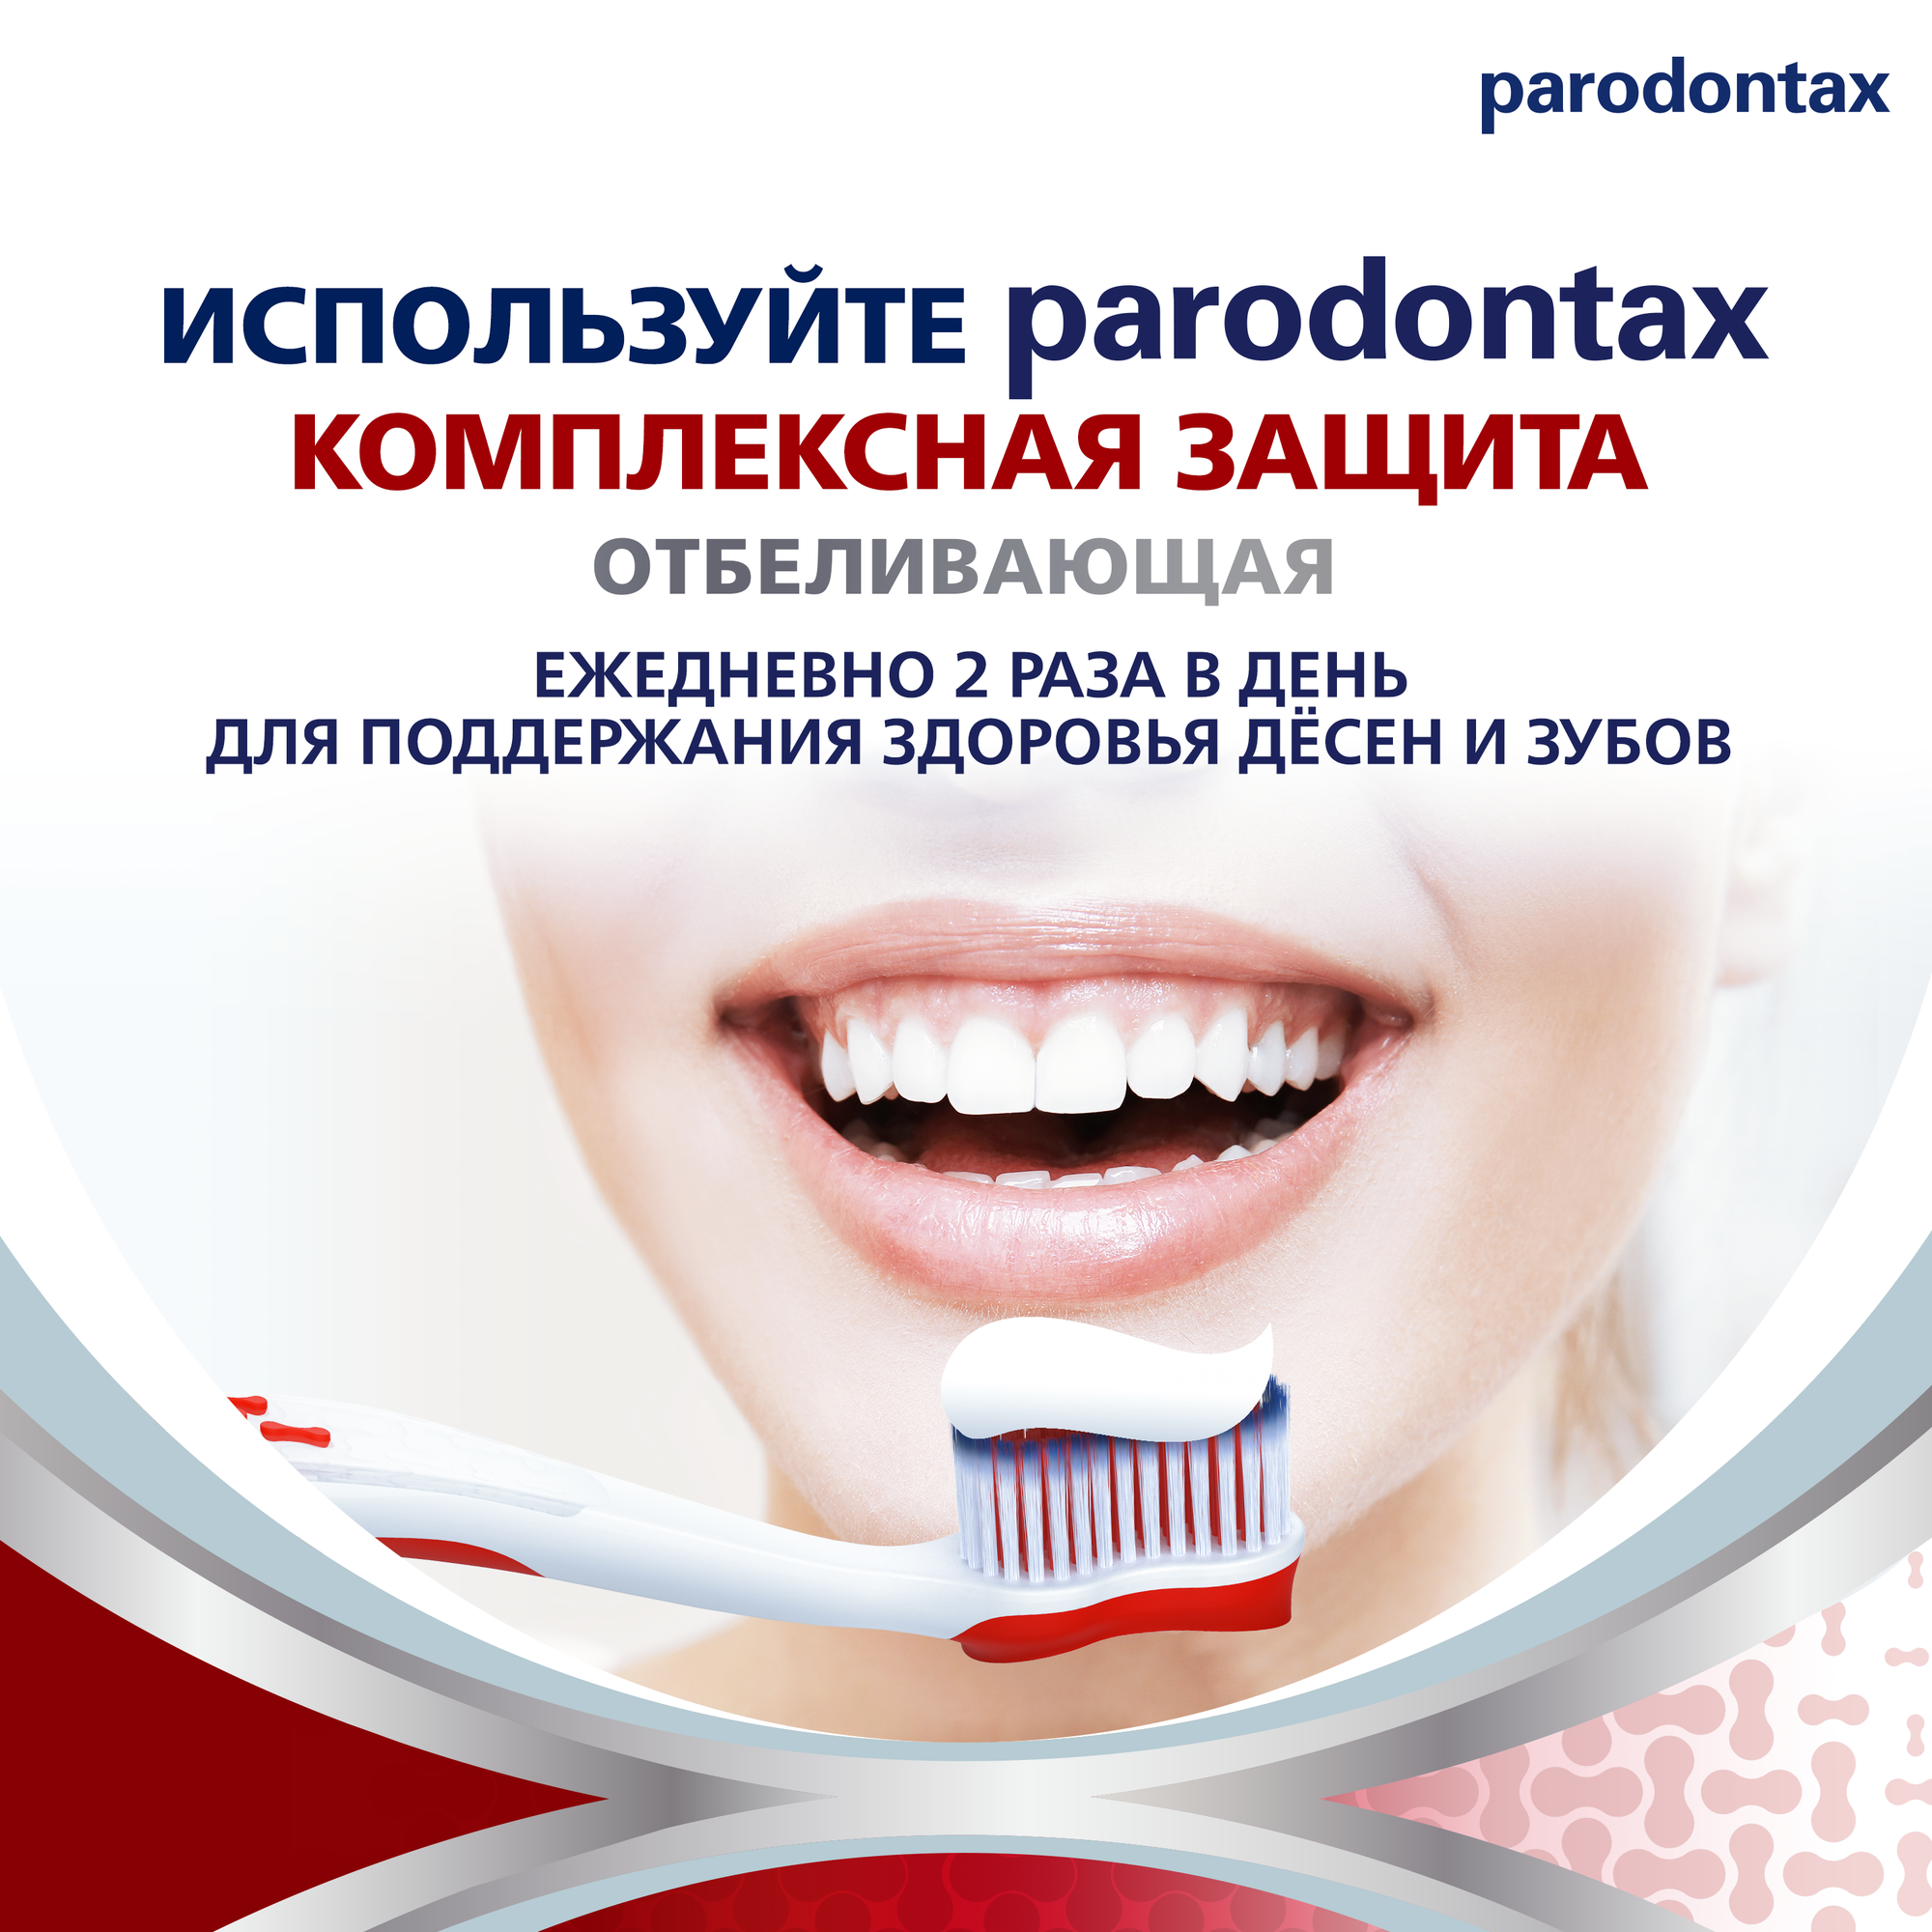 Зубная паста parodontax Комплексная Защита Отбеливающая для удаления зубного налета, укрепления зубов, поддержания здоровья десен с фтором, 75мл*2шт